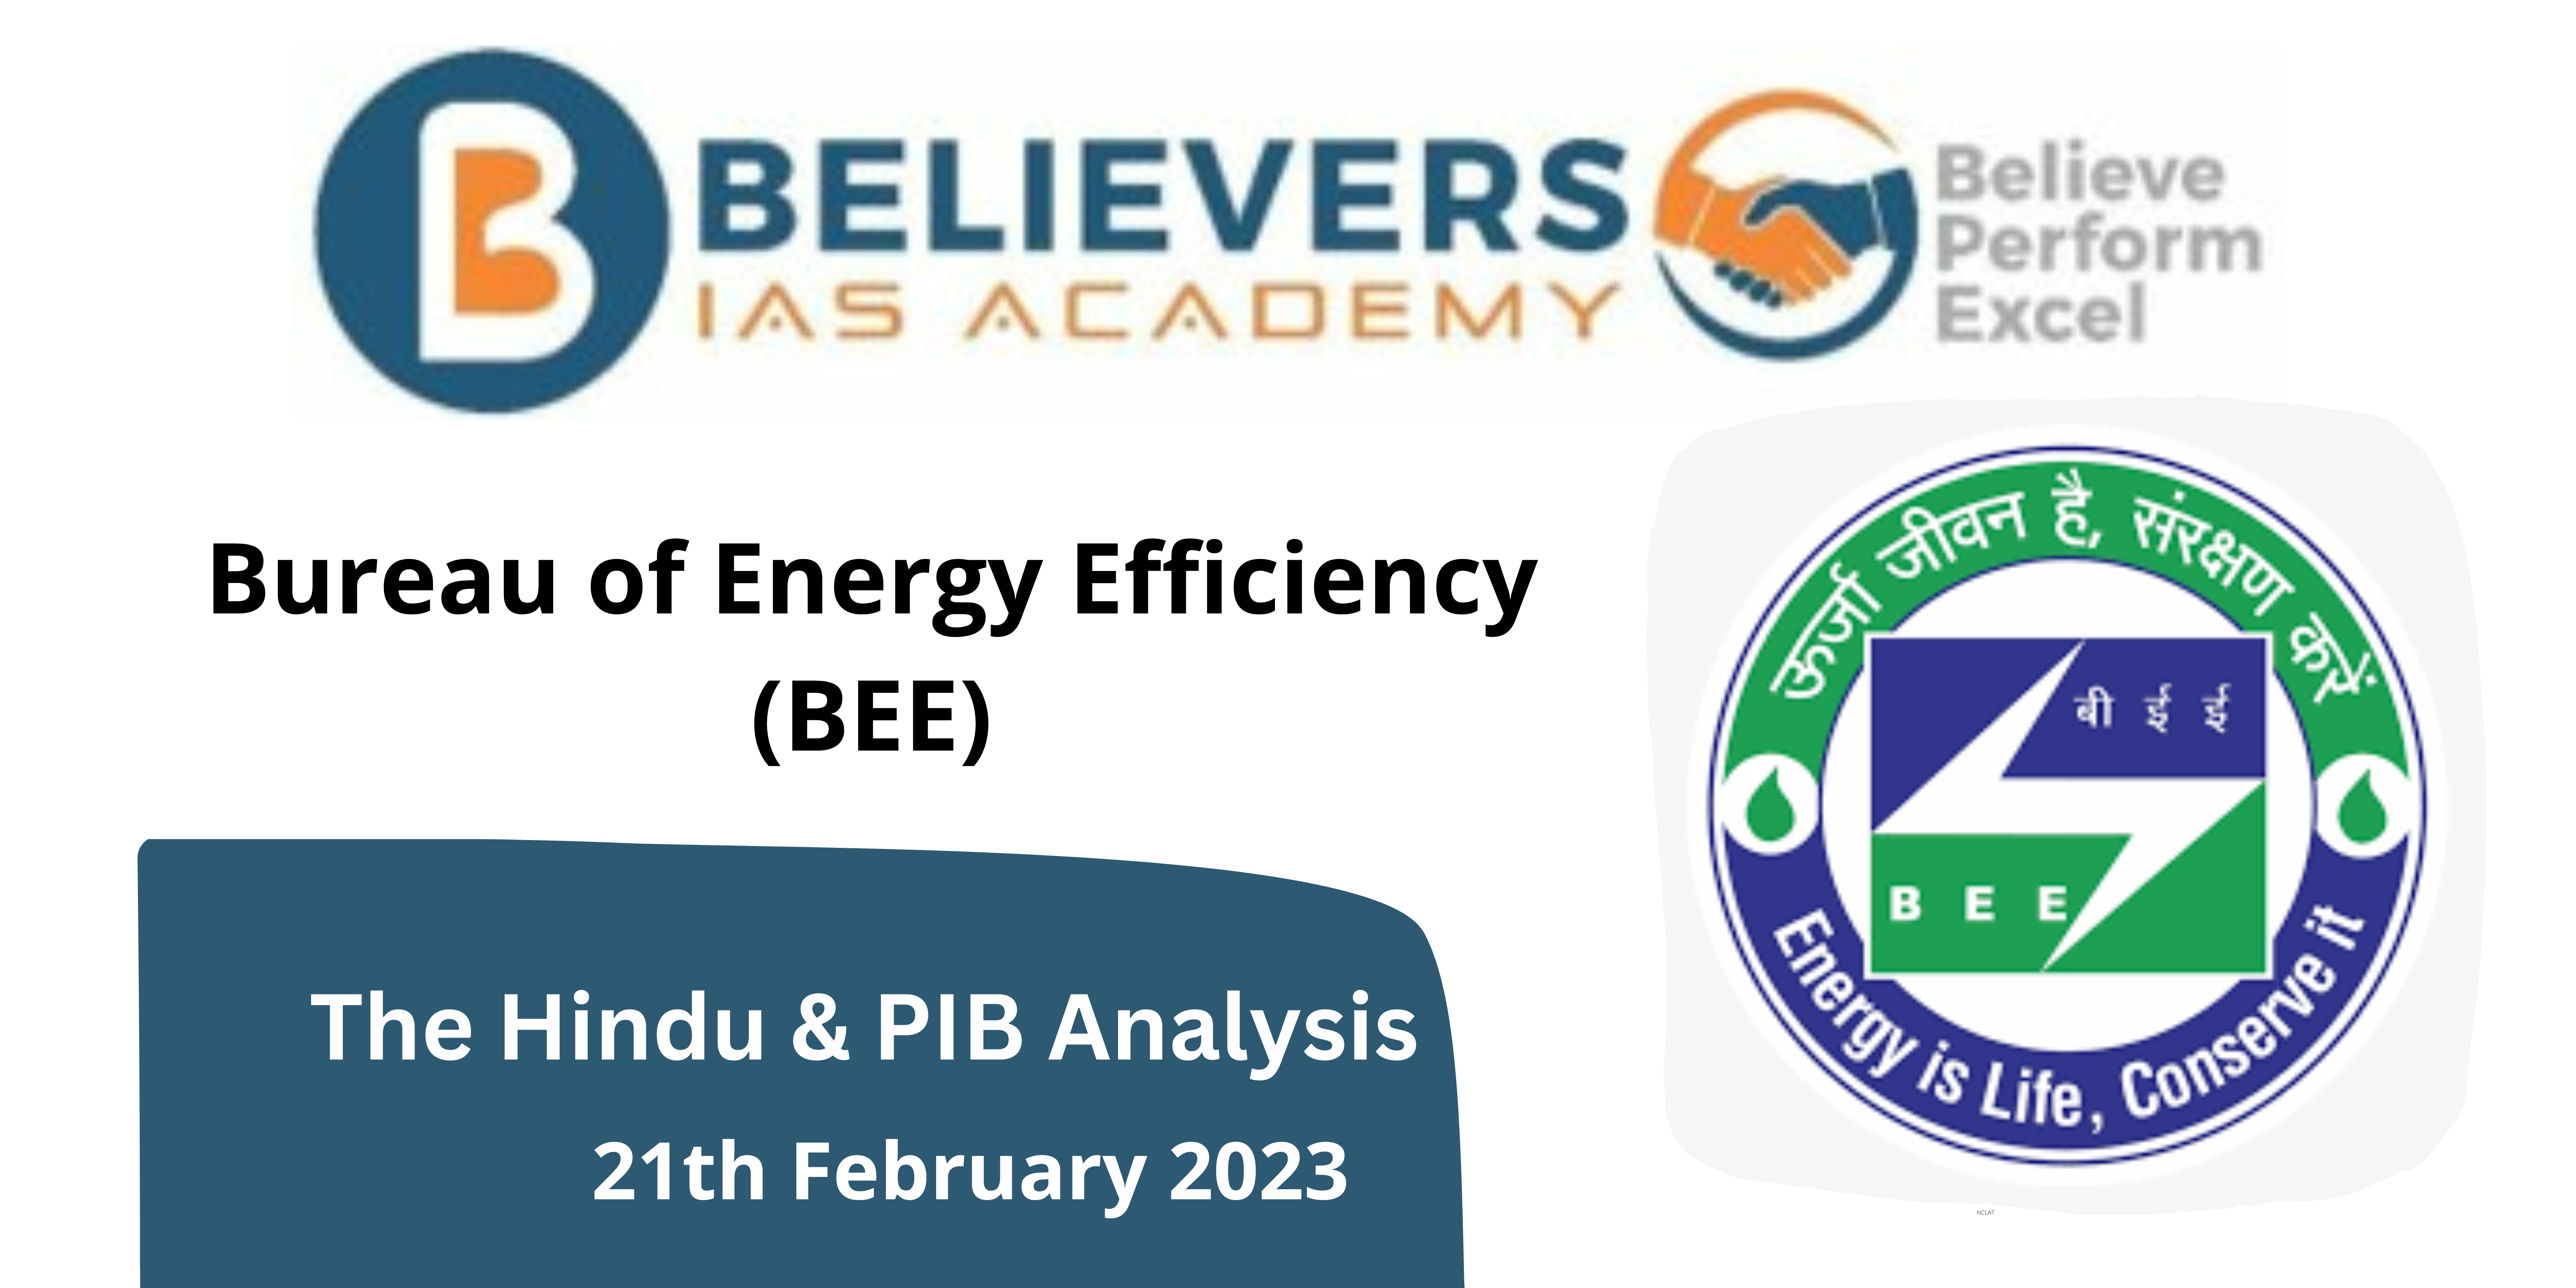 Bureau of Energy Efficiency: BEE